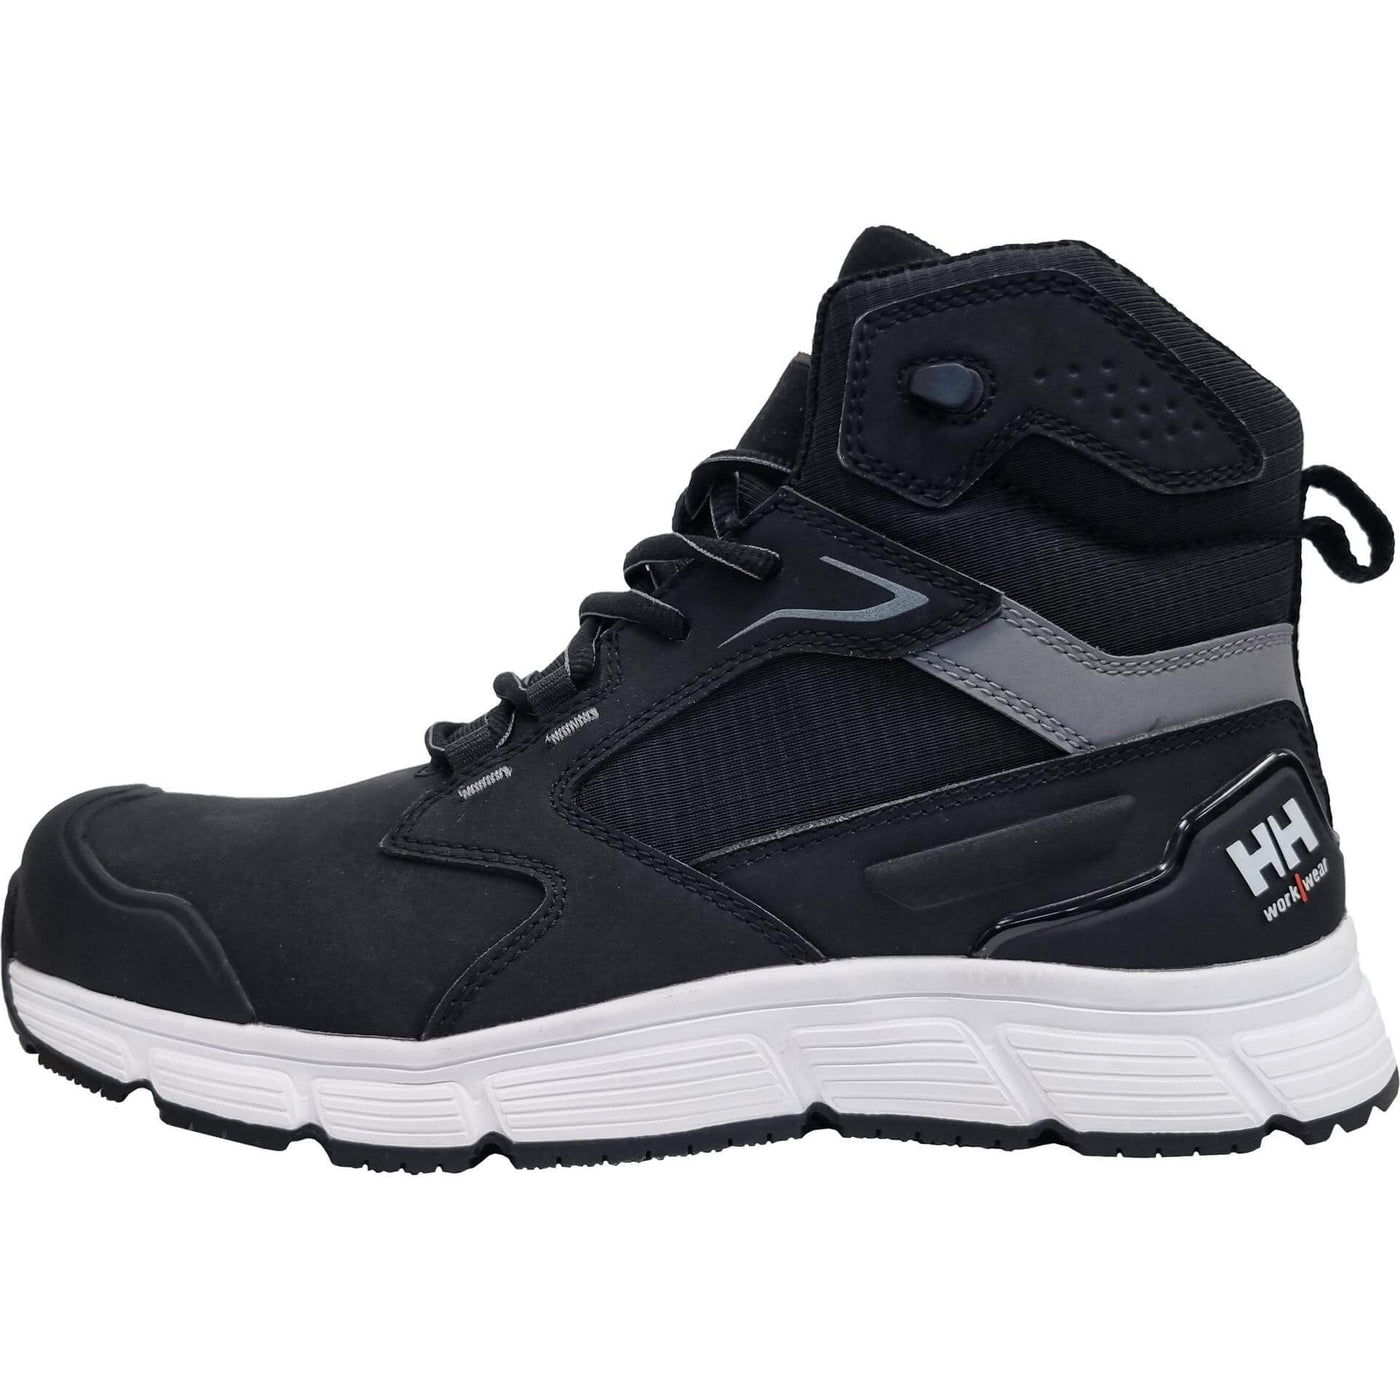 Helly Hansen Kensington MXR Mid S3L Composite Toe Safety Boots Black/White Front#colour_black-white